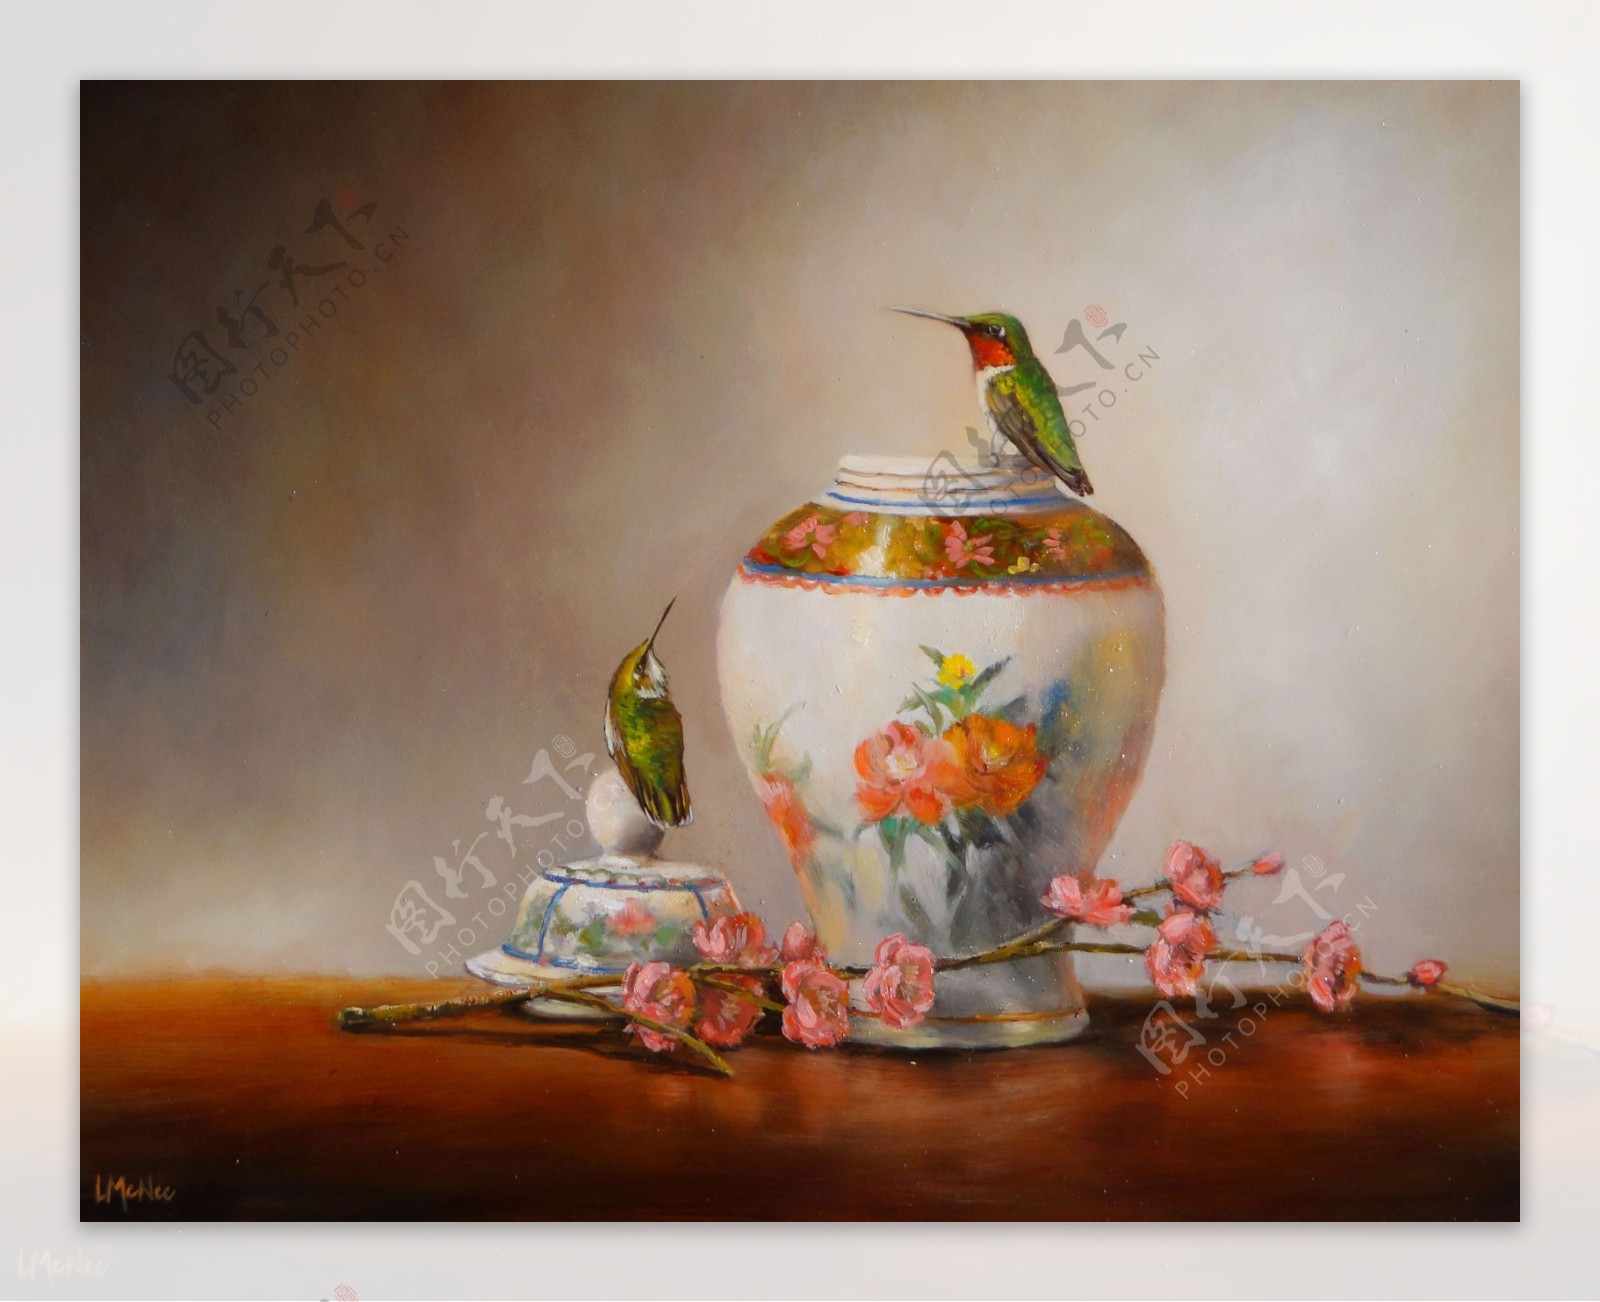 蜂鸟与花瓶静物油画图片